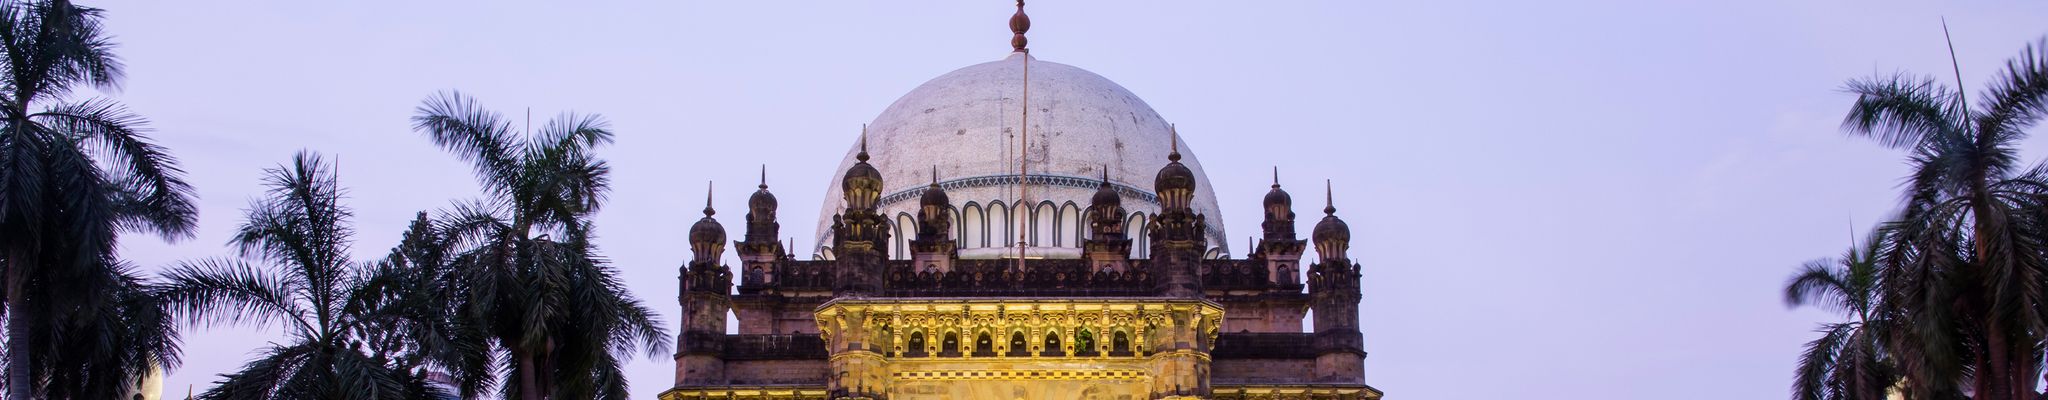 Chhatrapati Shivaji Maharaj Vastu Sangrahalaya, CSMVS Museum, Mumbai, India